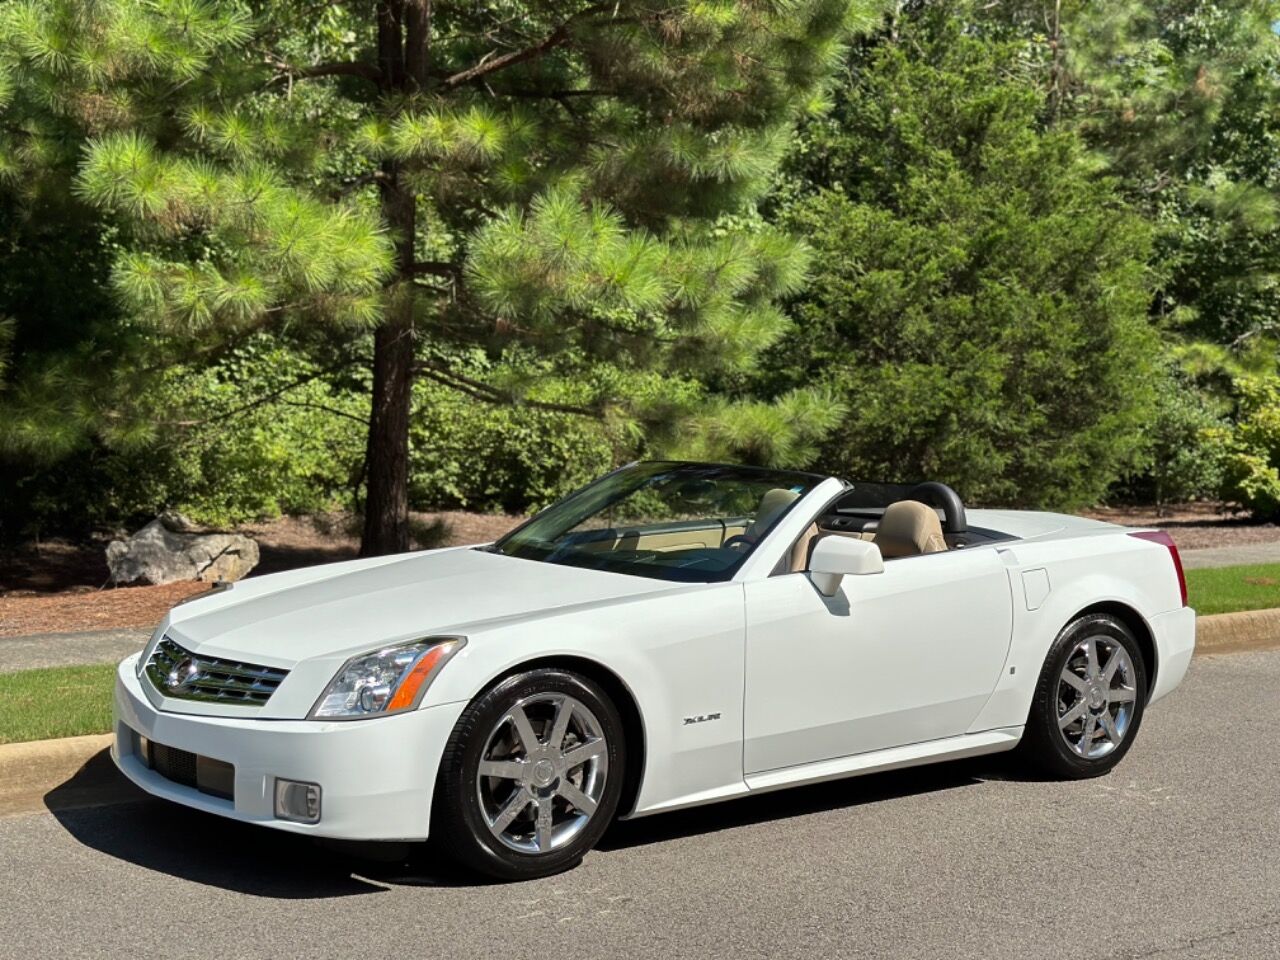 2008 Cadillac XLR Alpine White Edition